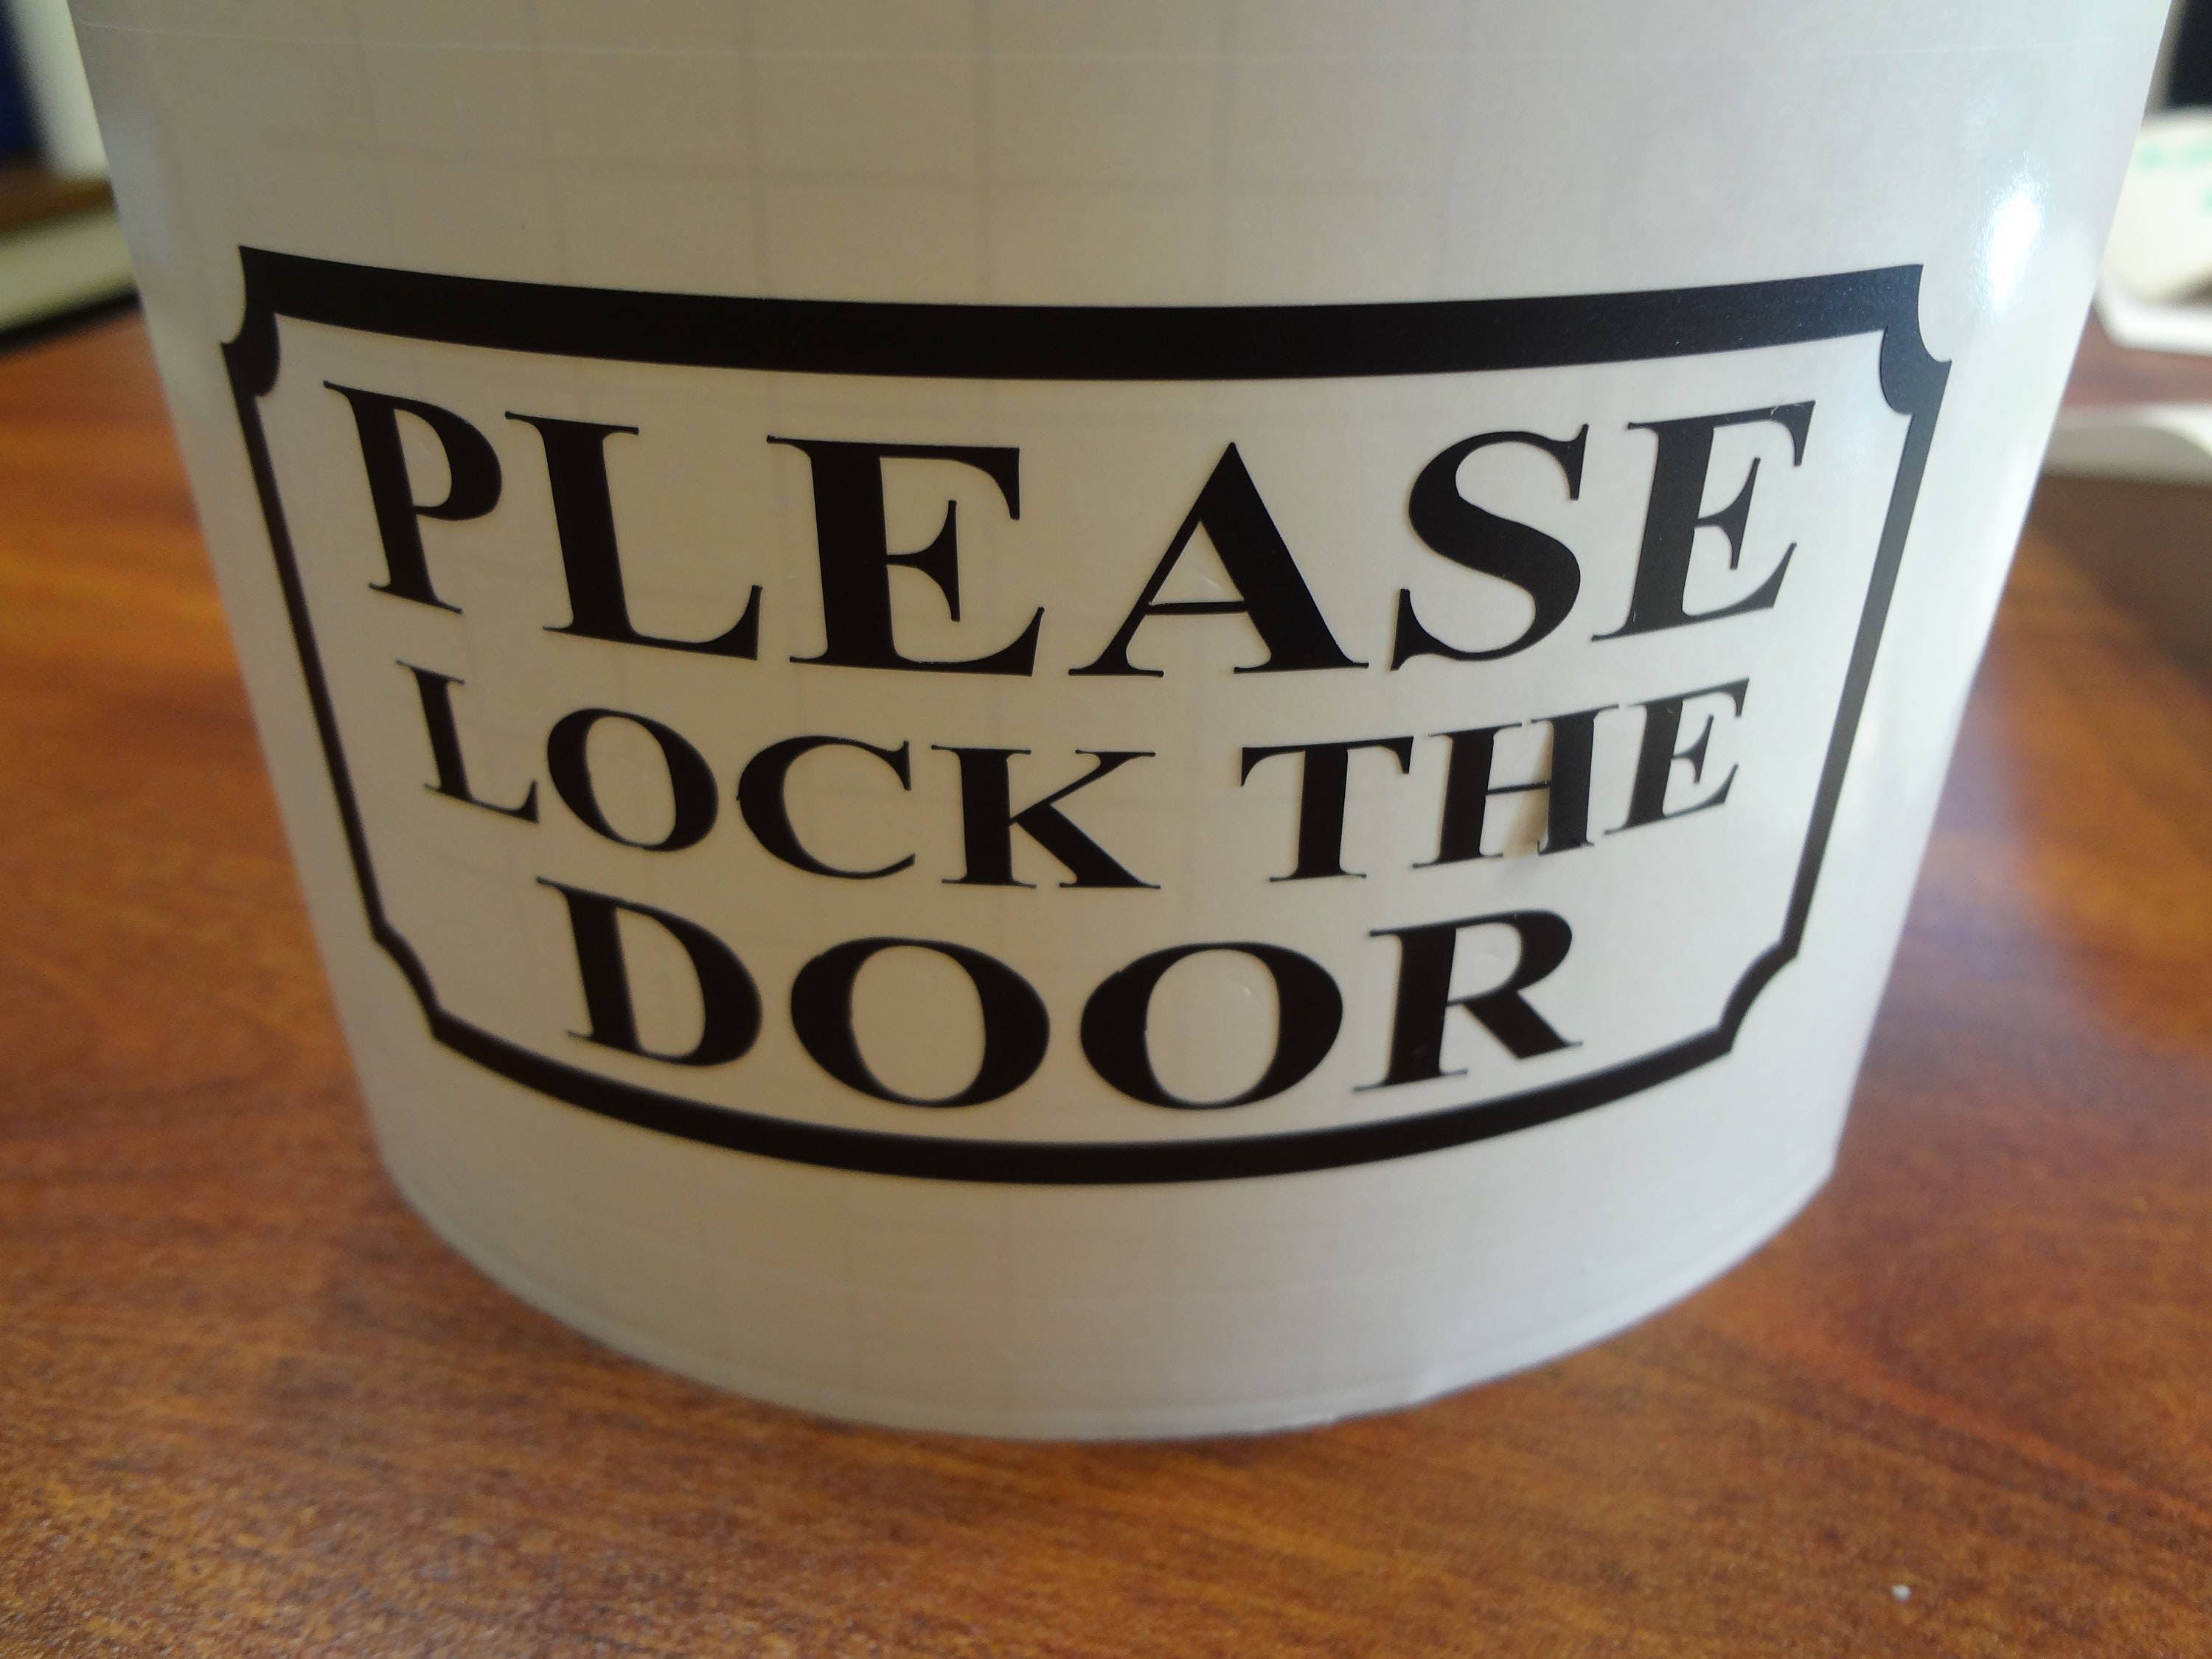 2 Please Lock the Door Decal Sign Wall DIY & Save Door Vinyl